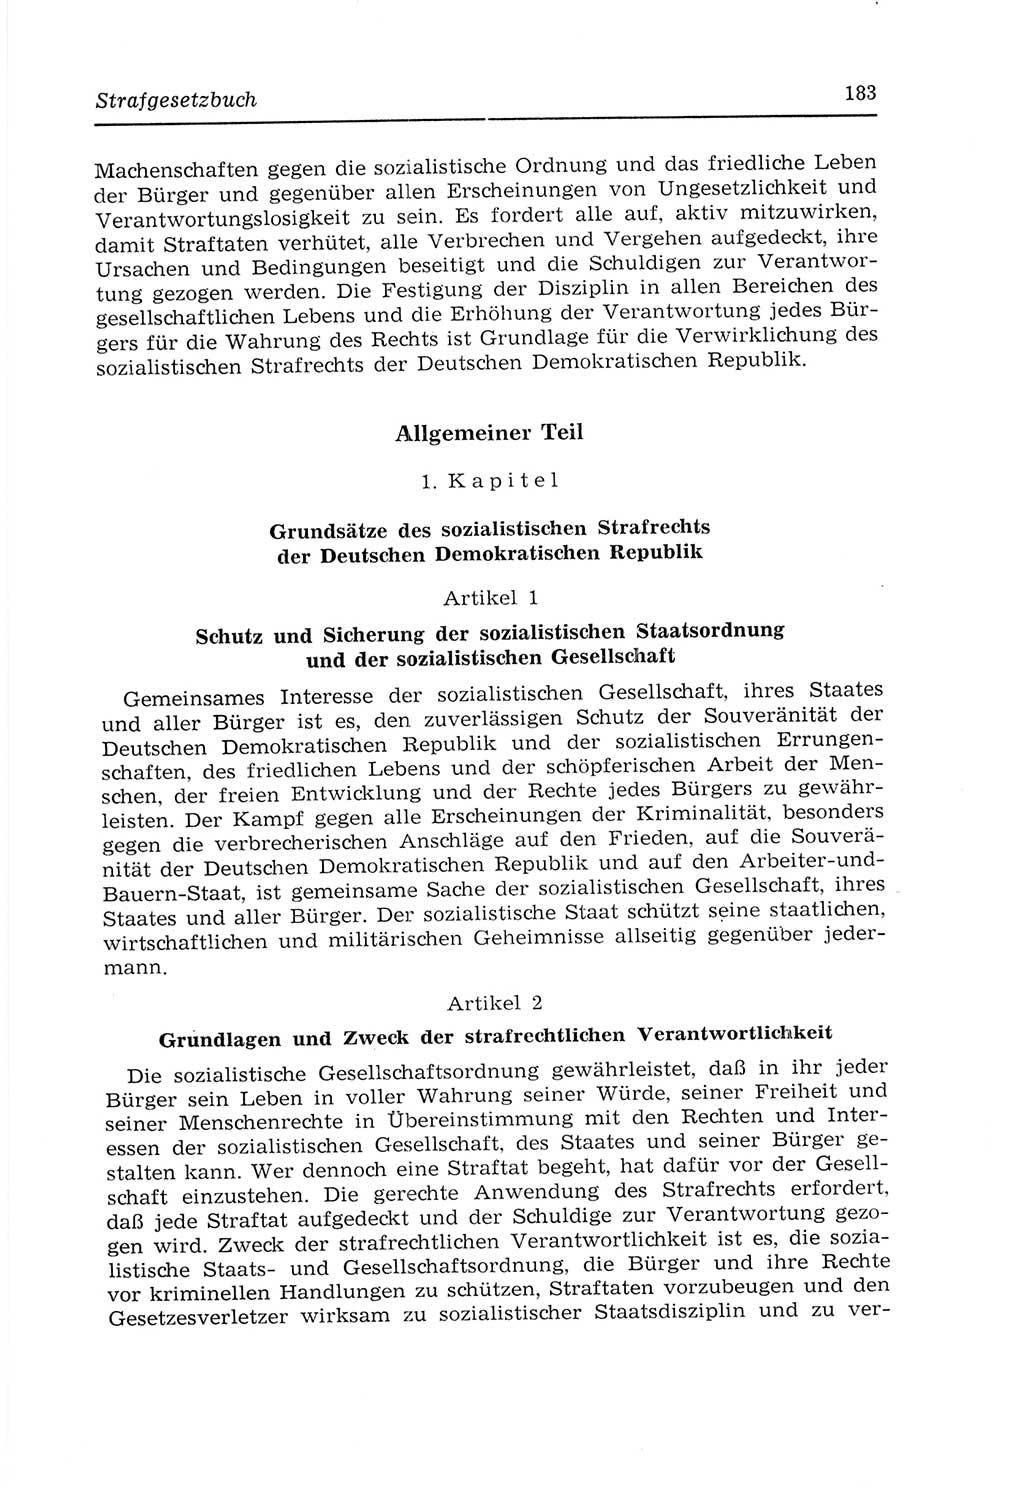 Strafvollzugs- und Wiedereingliederungsgesetz (SVWG) der Deutschen Demokratischen Republik (DDR) 1968, Seite 183 (SVWG DDR 1968, S. 183)